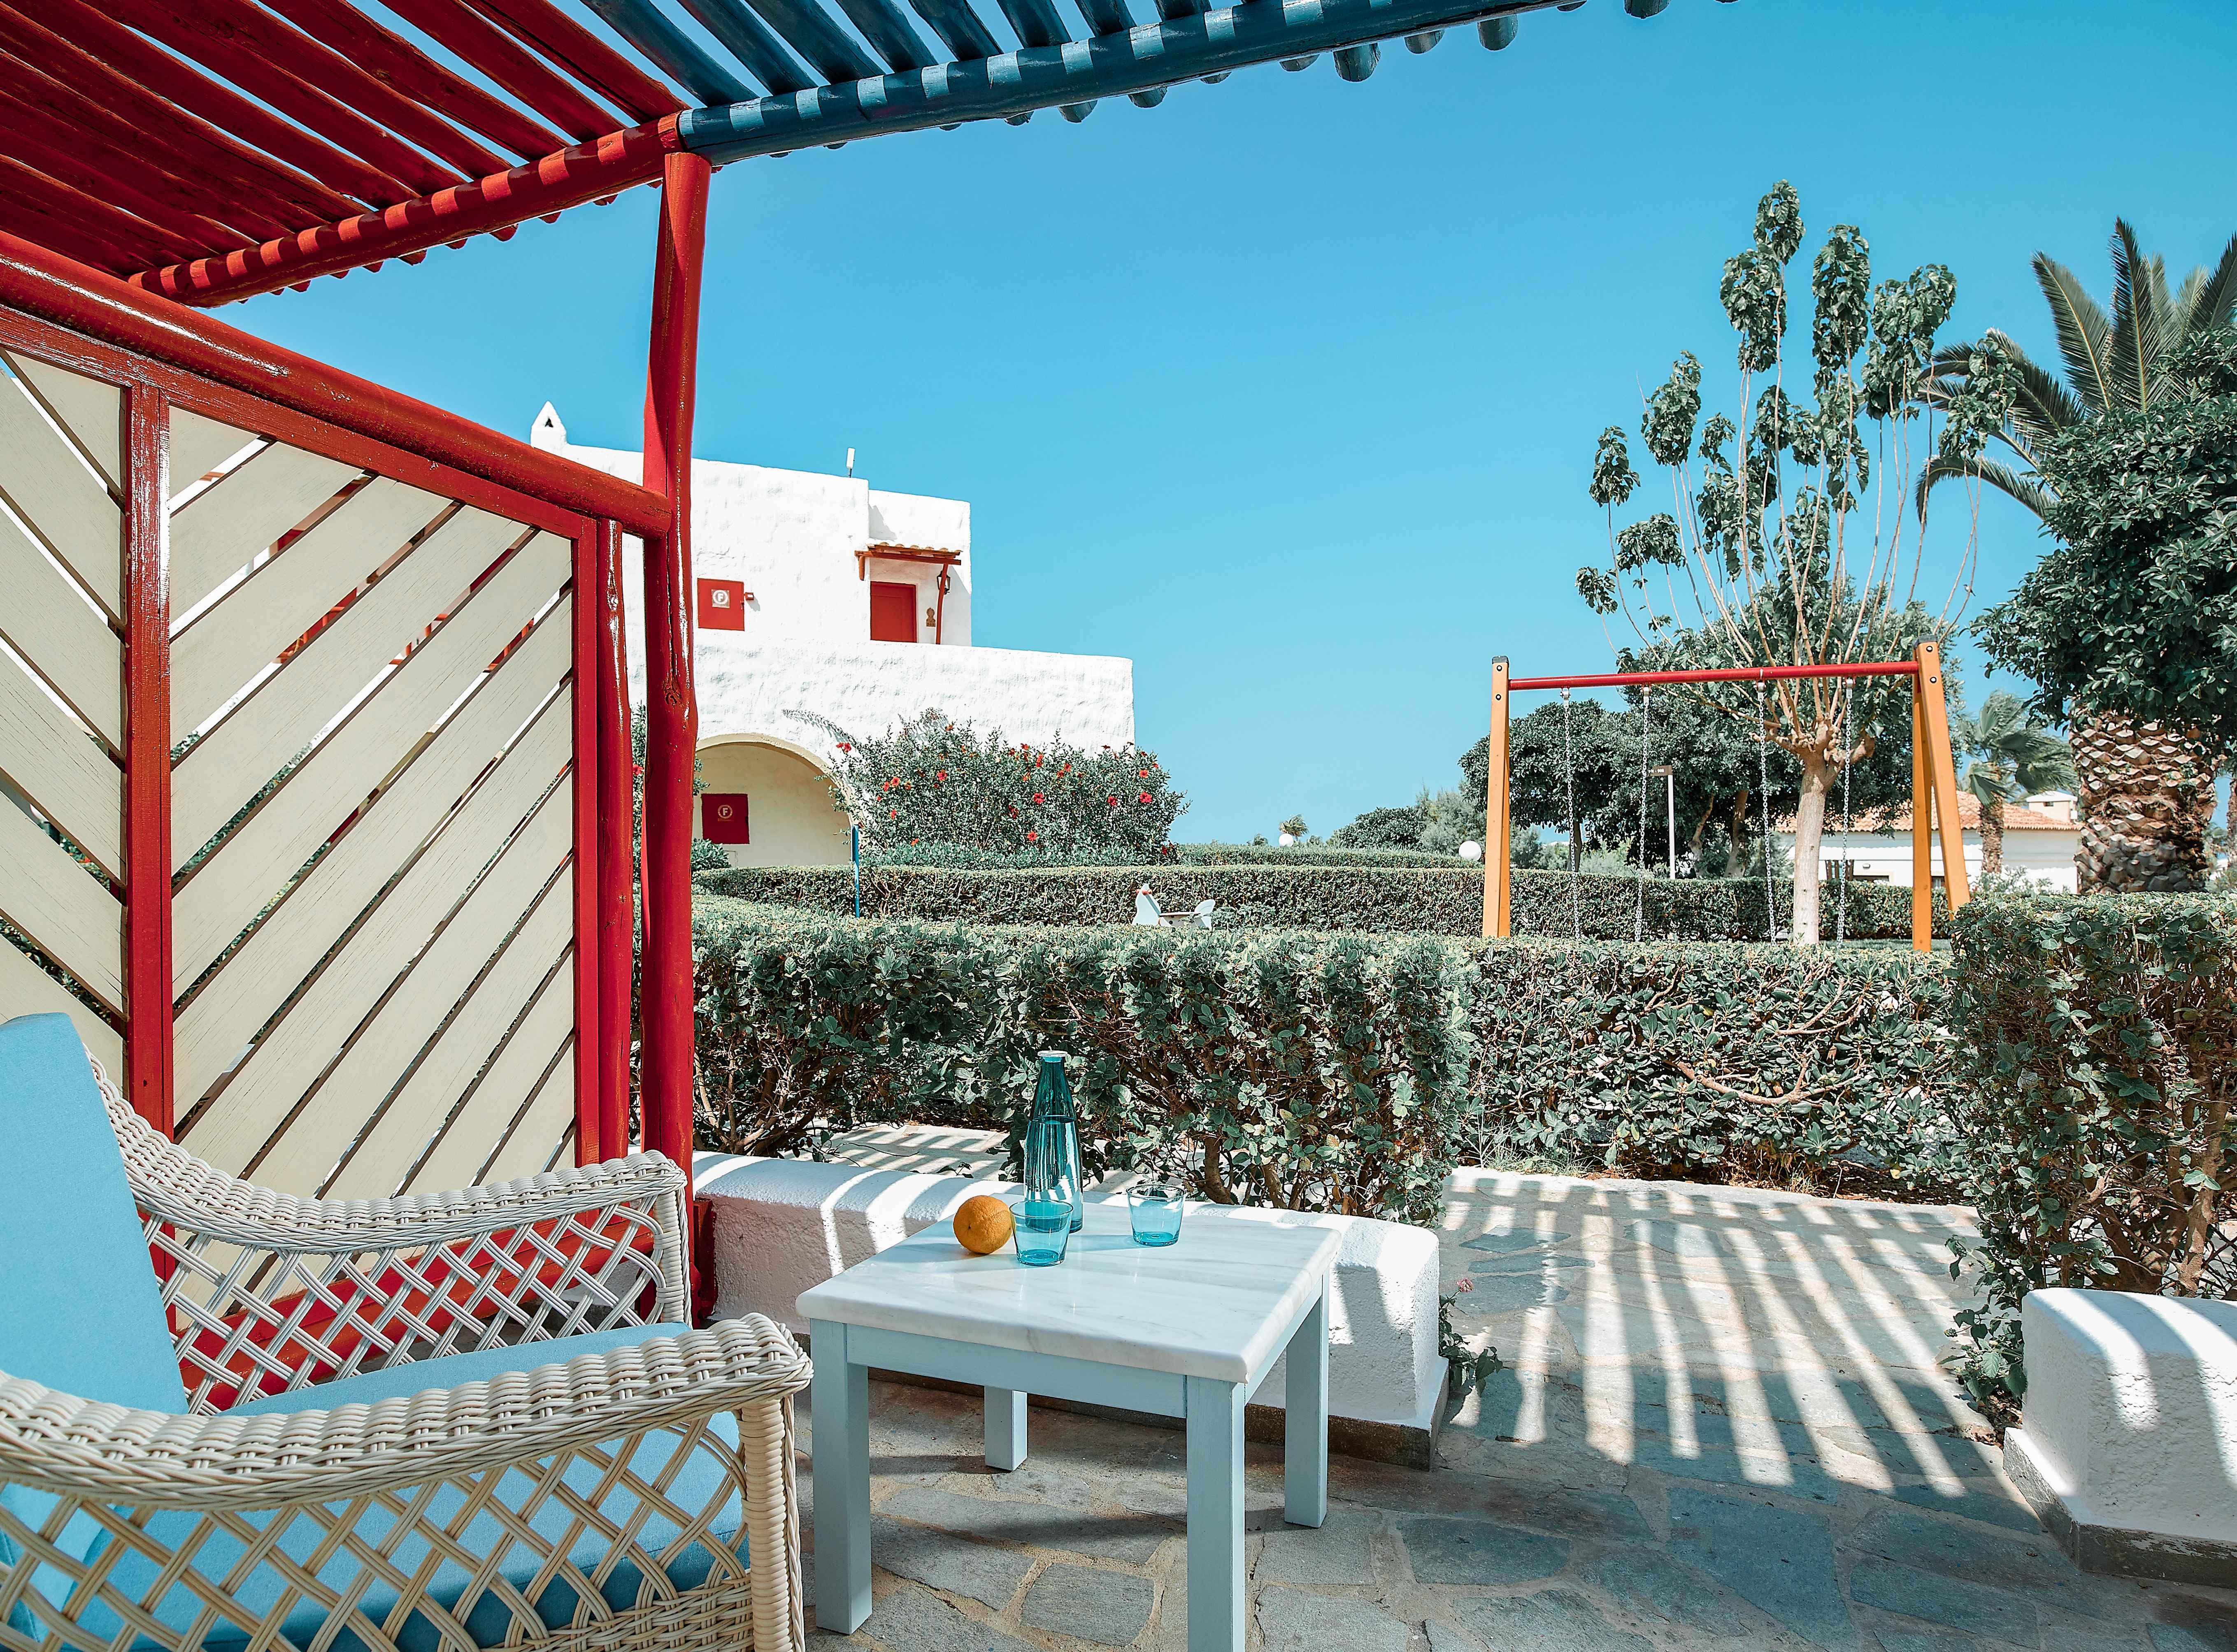 Mitsis Cretan Village Beach Hotel